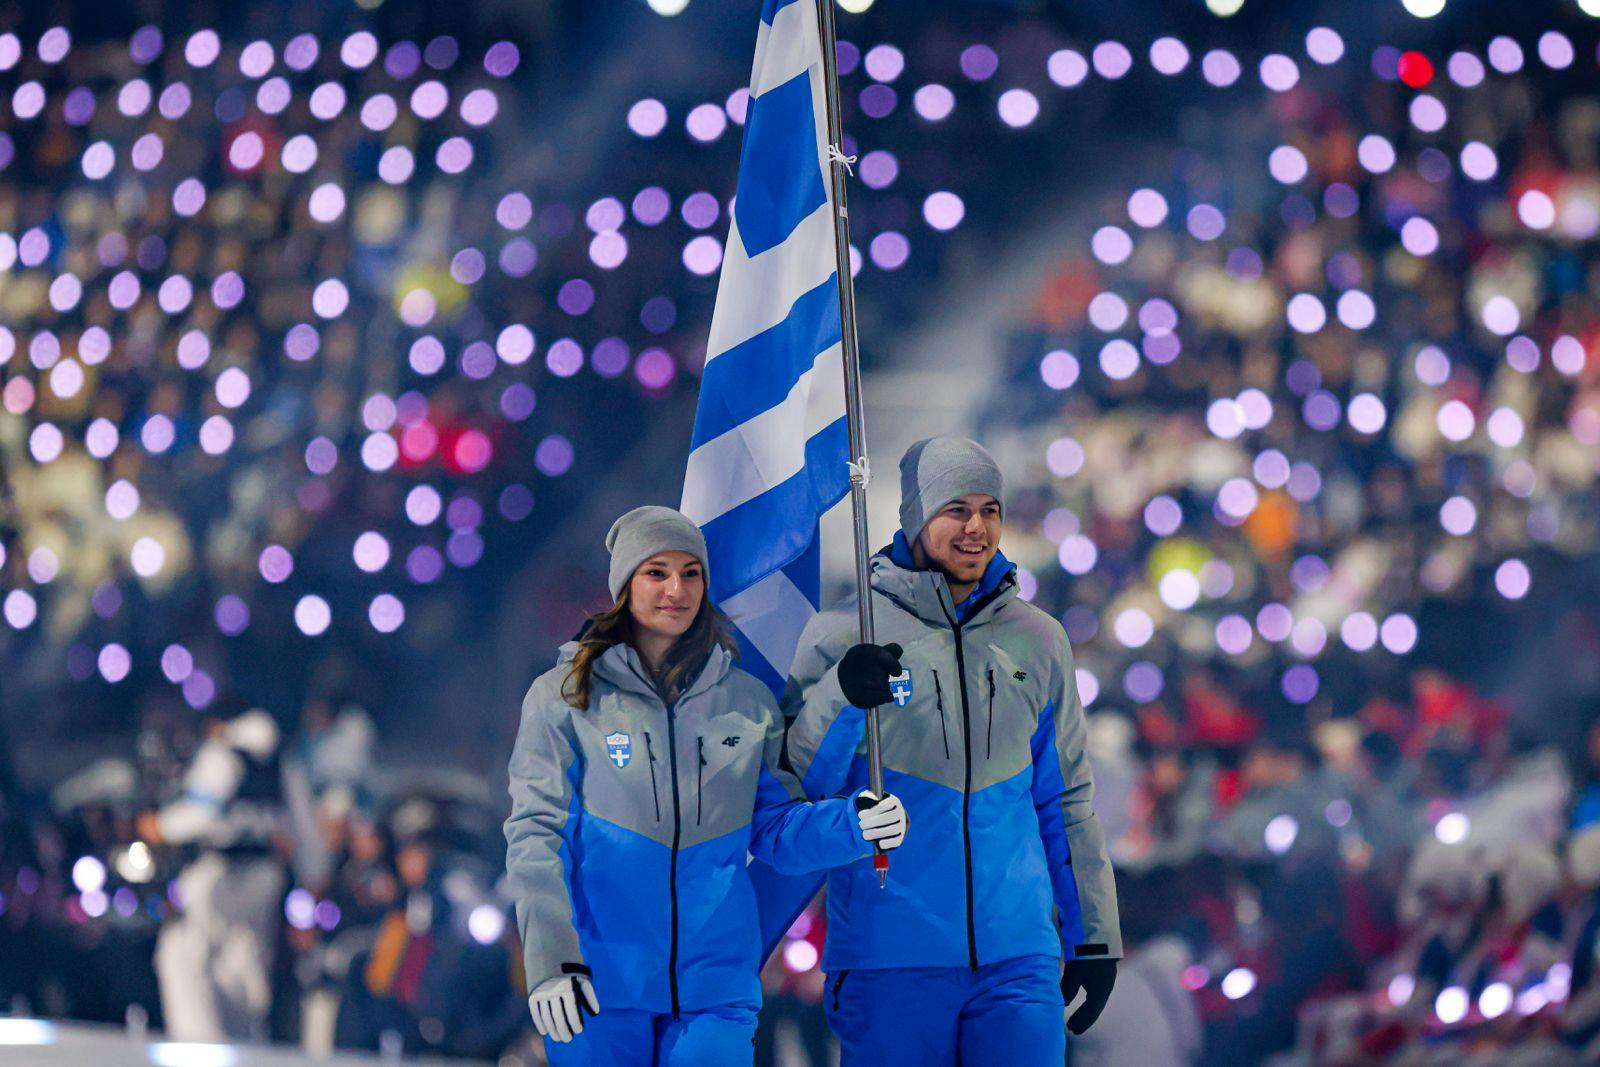 Με την Ελλάδα πρώτη στην Τελετή Εναρξης άρχισαν οι Χειμερινοί Ολυμπιακοί Νέων